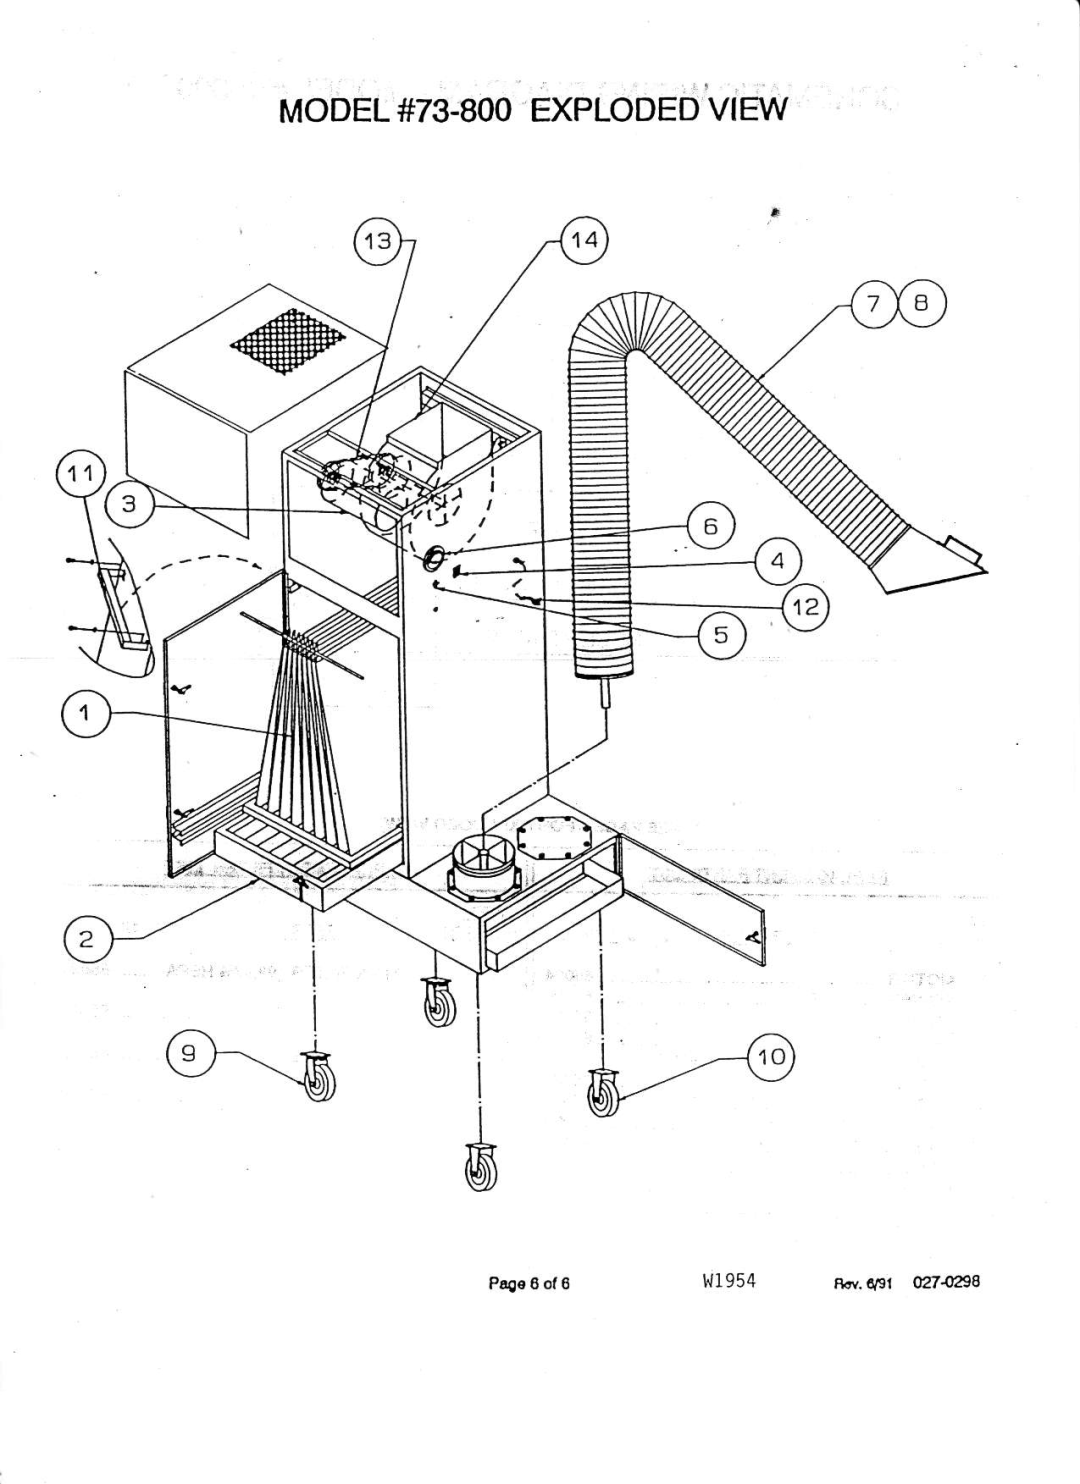 Associated Equipment 73-800 manual MODEL#73.800EXPLODEDVIEW, 1,t1954, Pr€e 6 ol6 